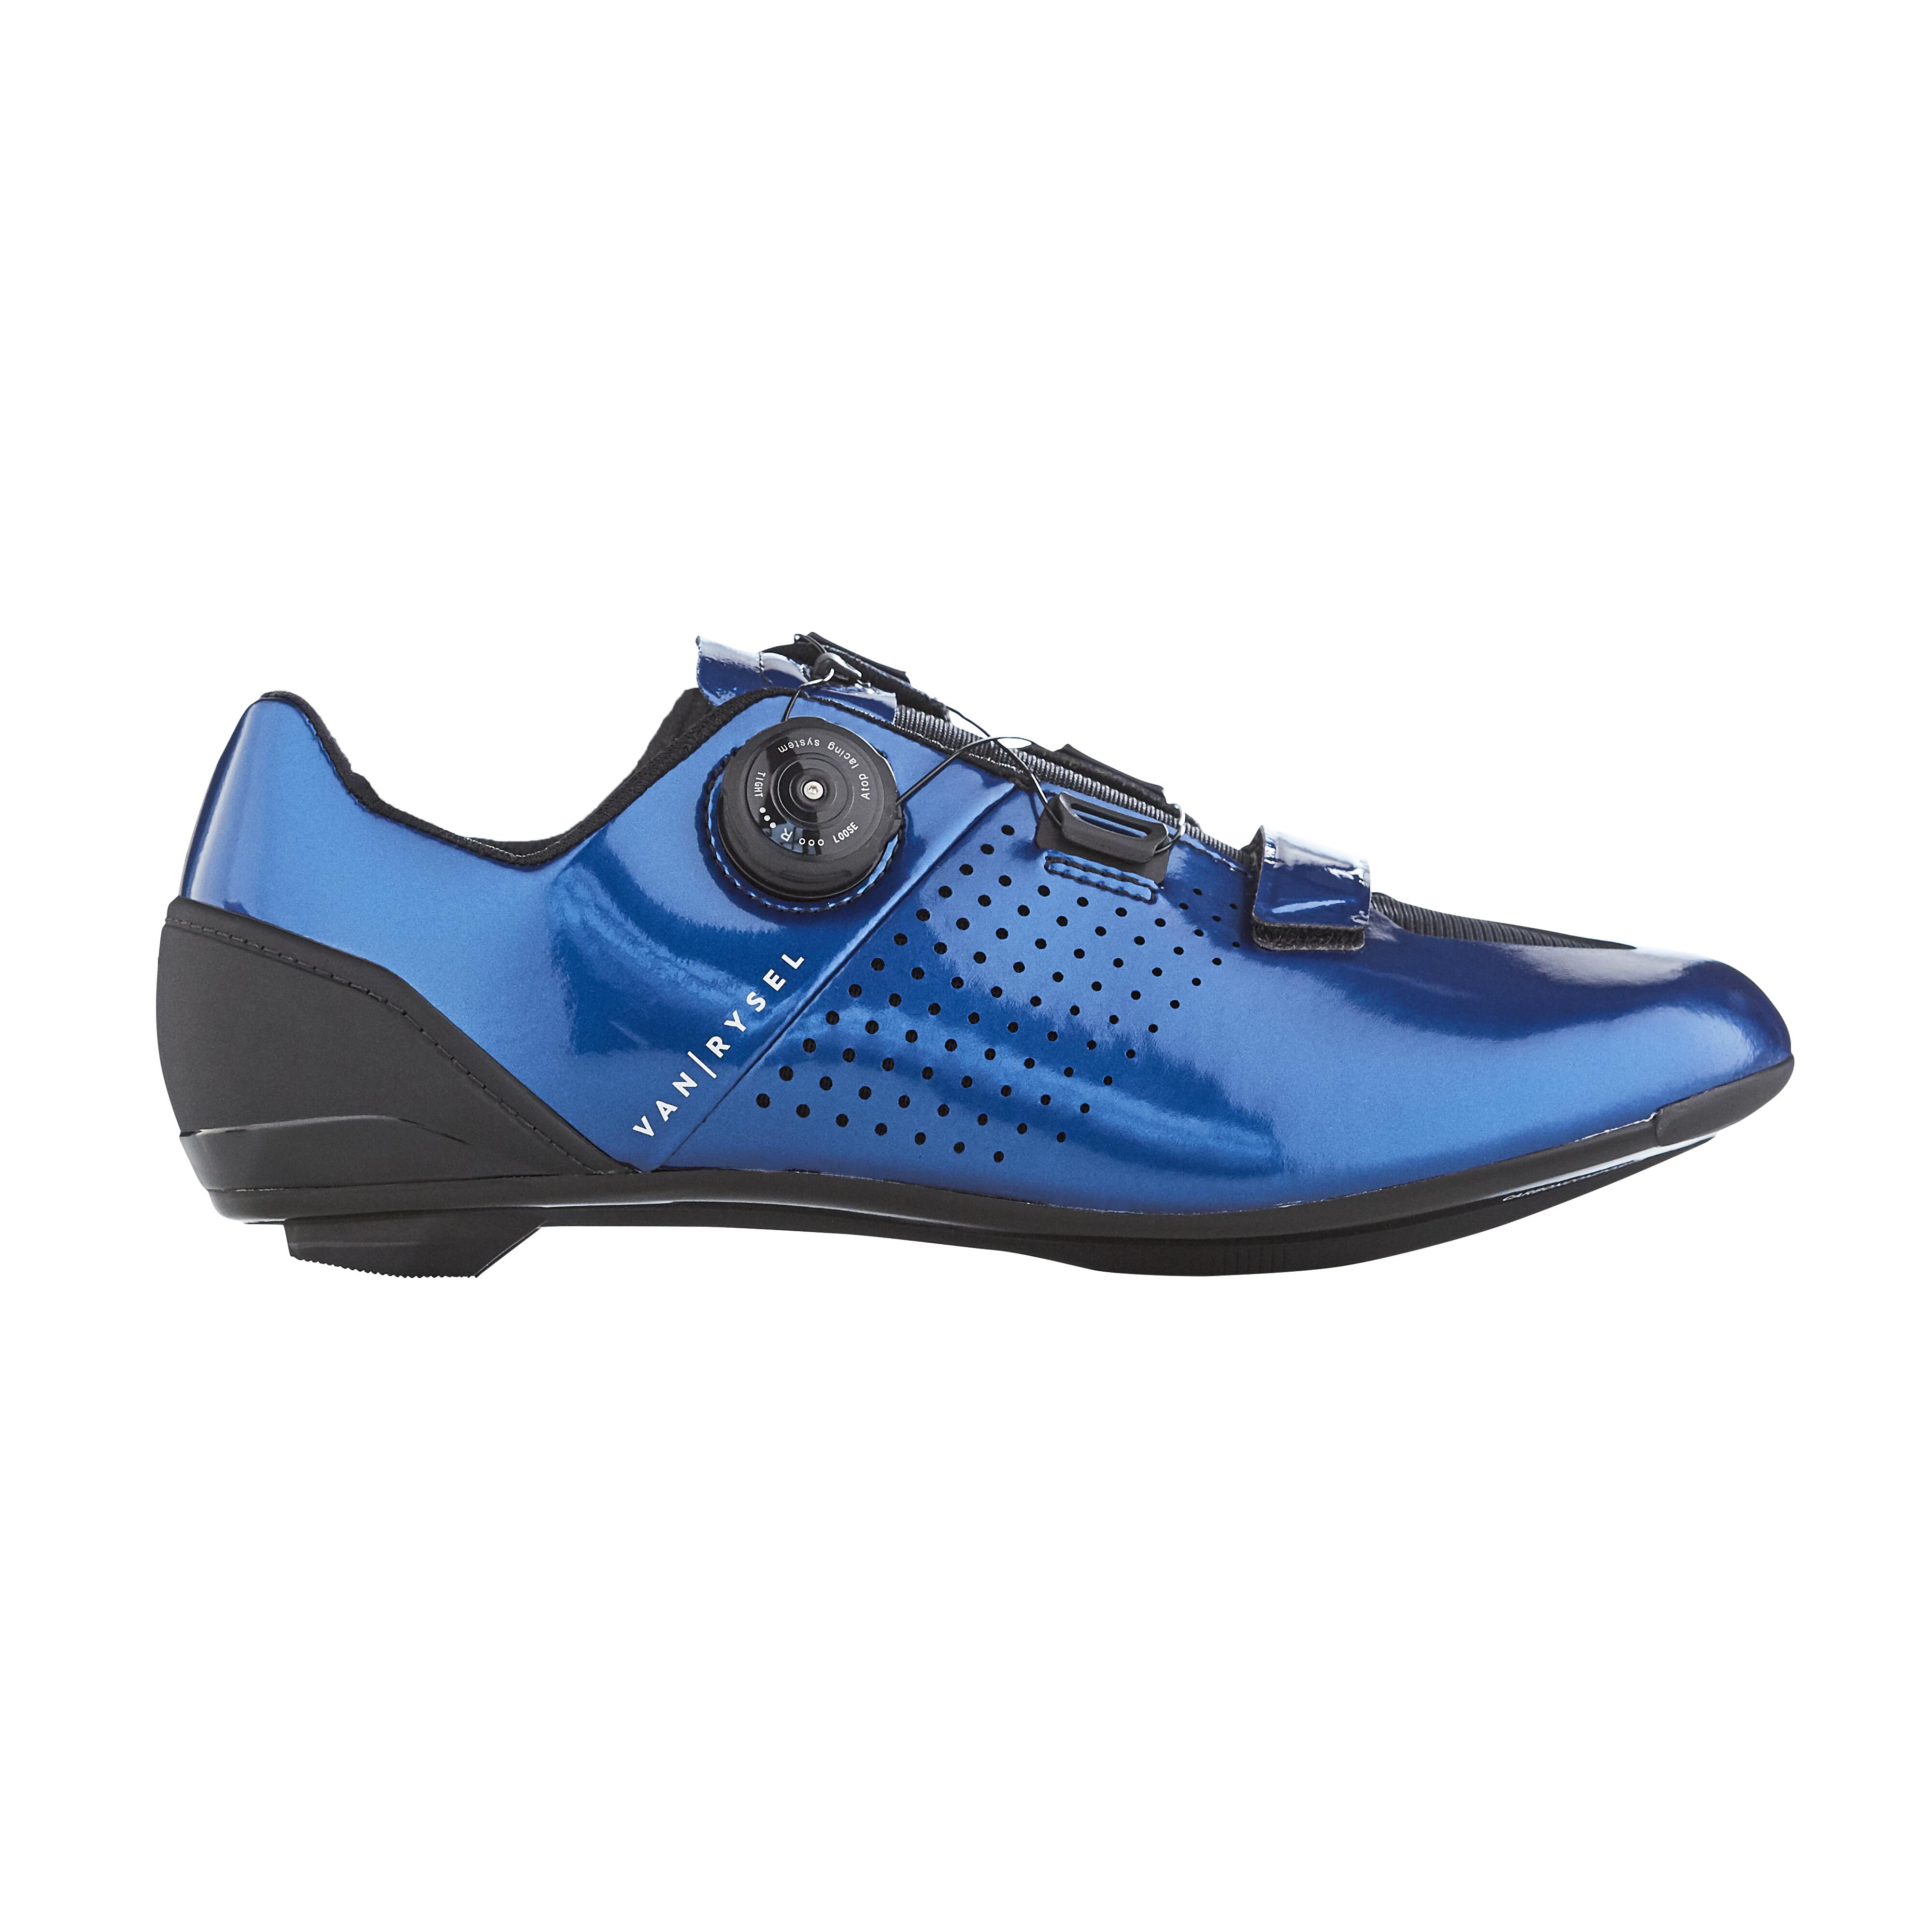 Road Biking Bike Shoes - RoadR 520 Blue - VAN RYSEL